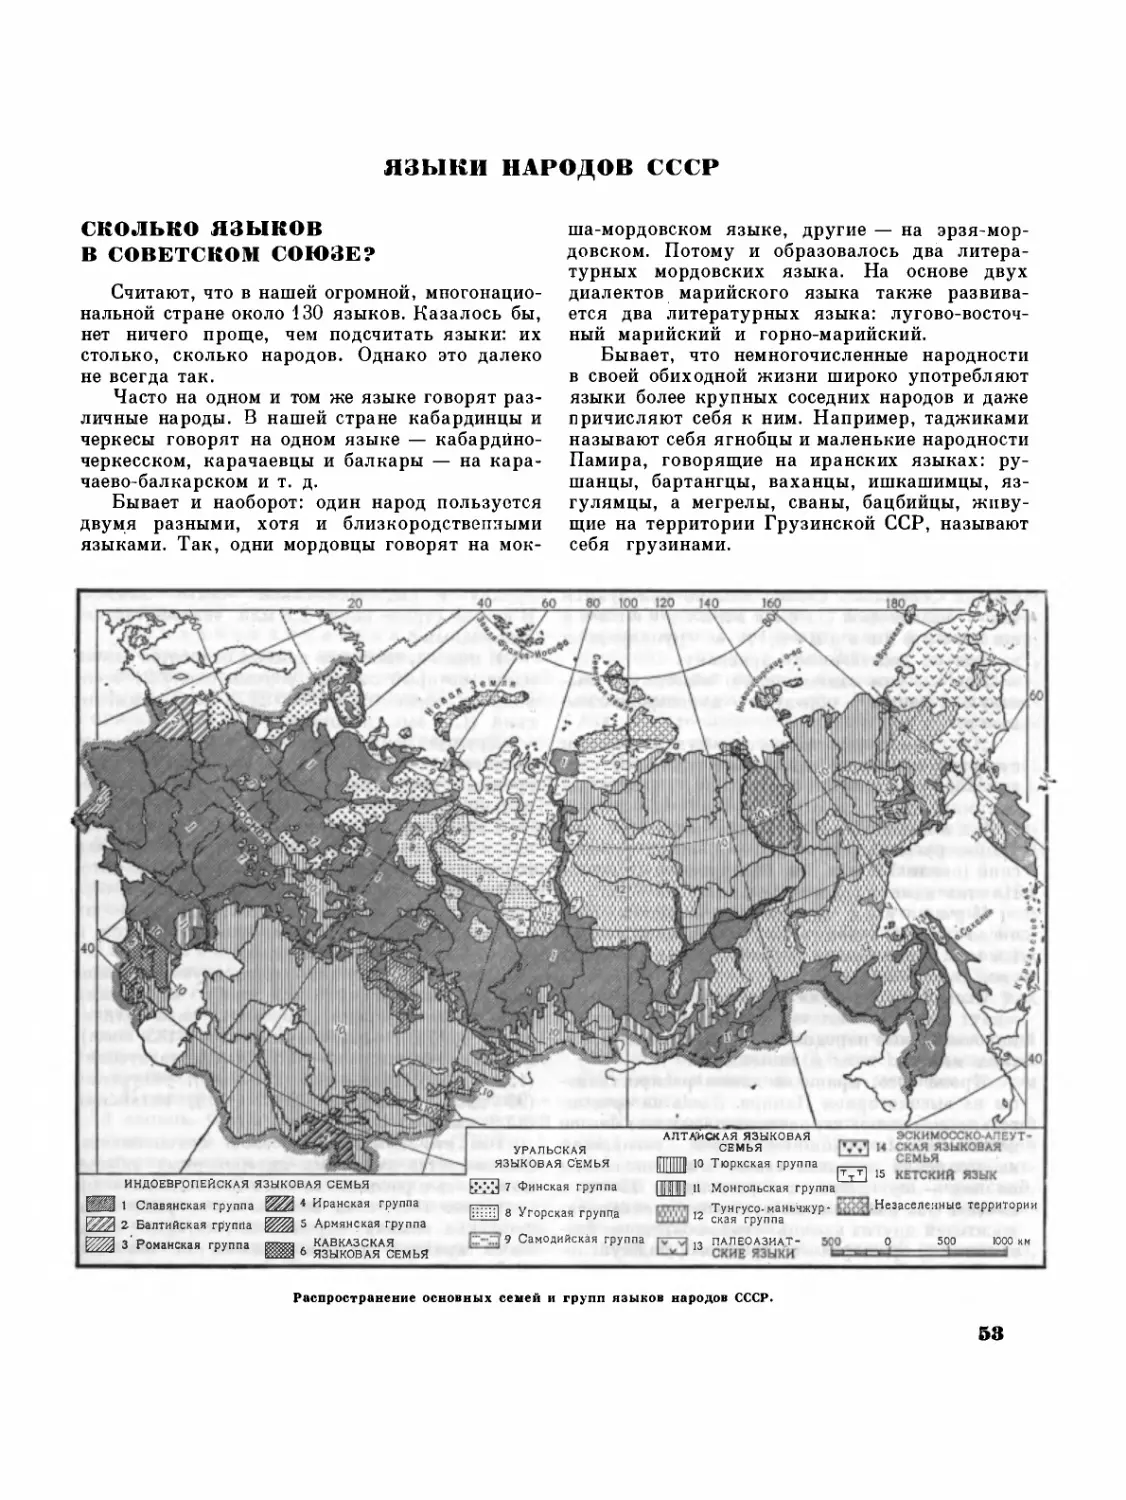 Языки народов СССР — М.И.Исаев
Сколько языков в Советском Союзе